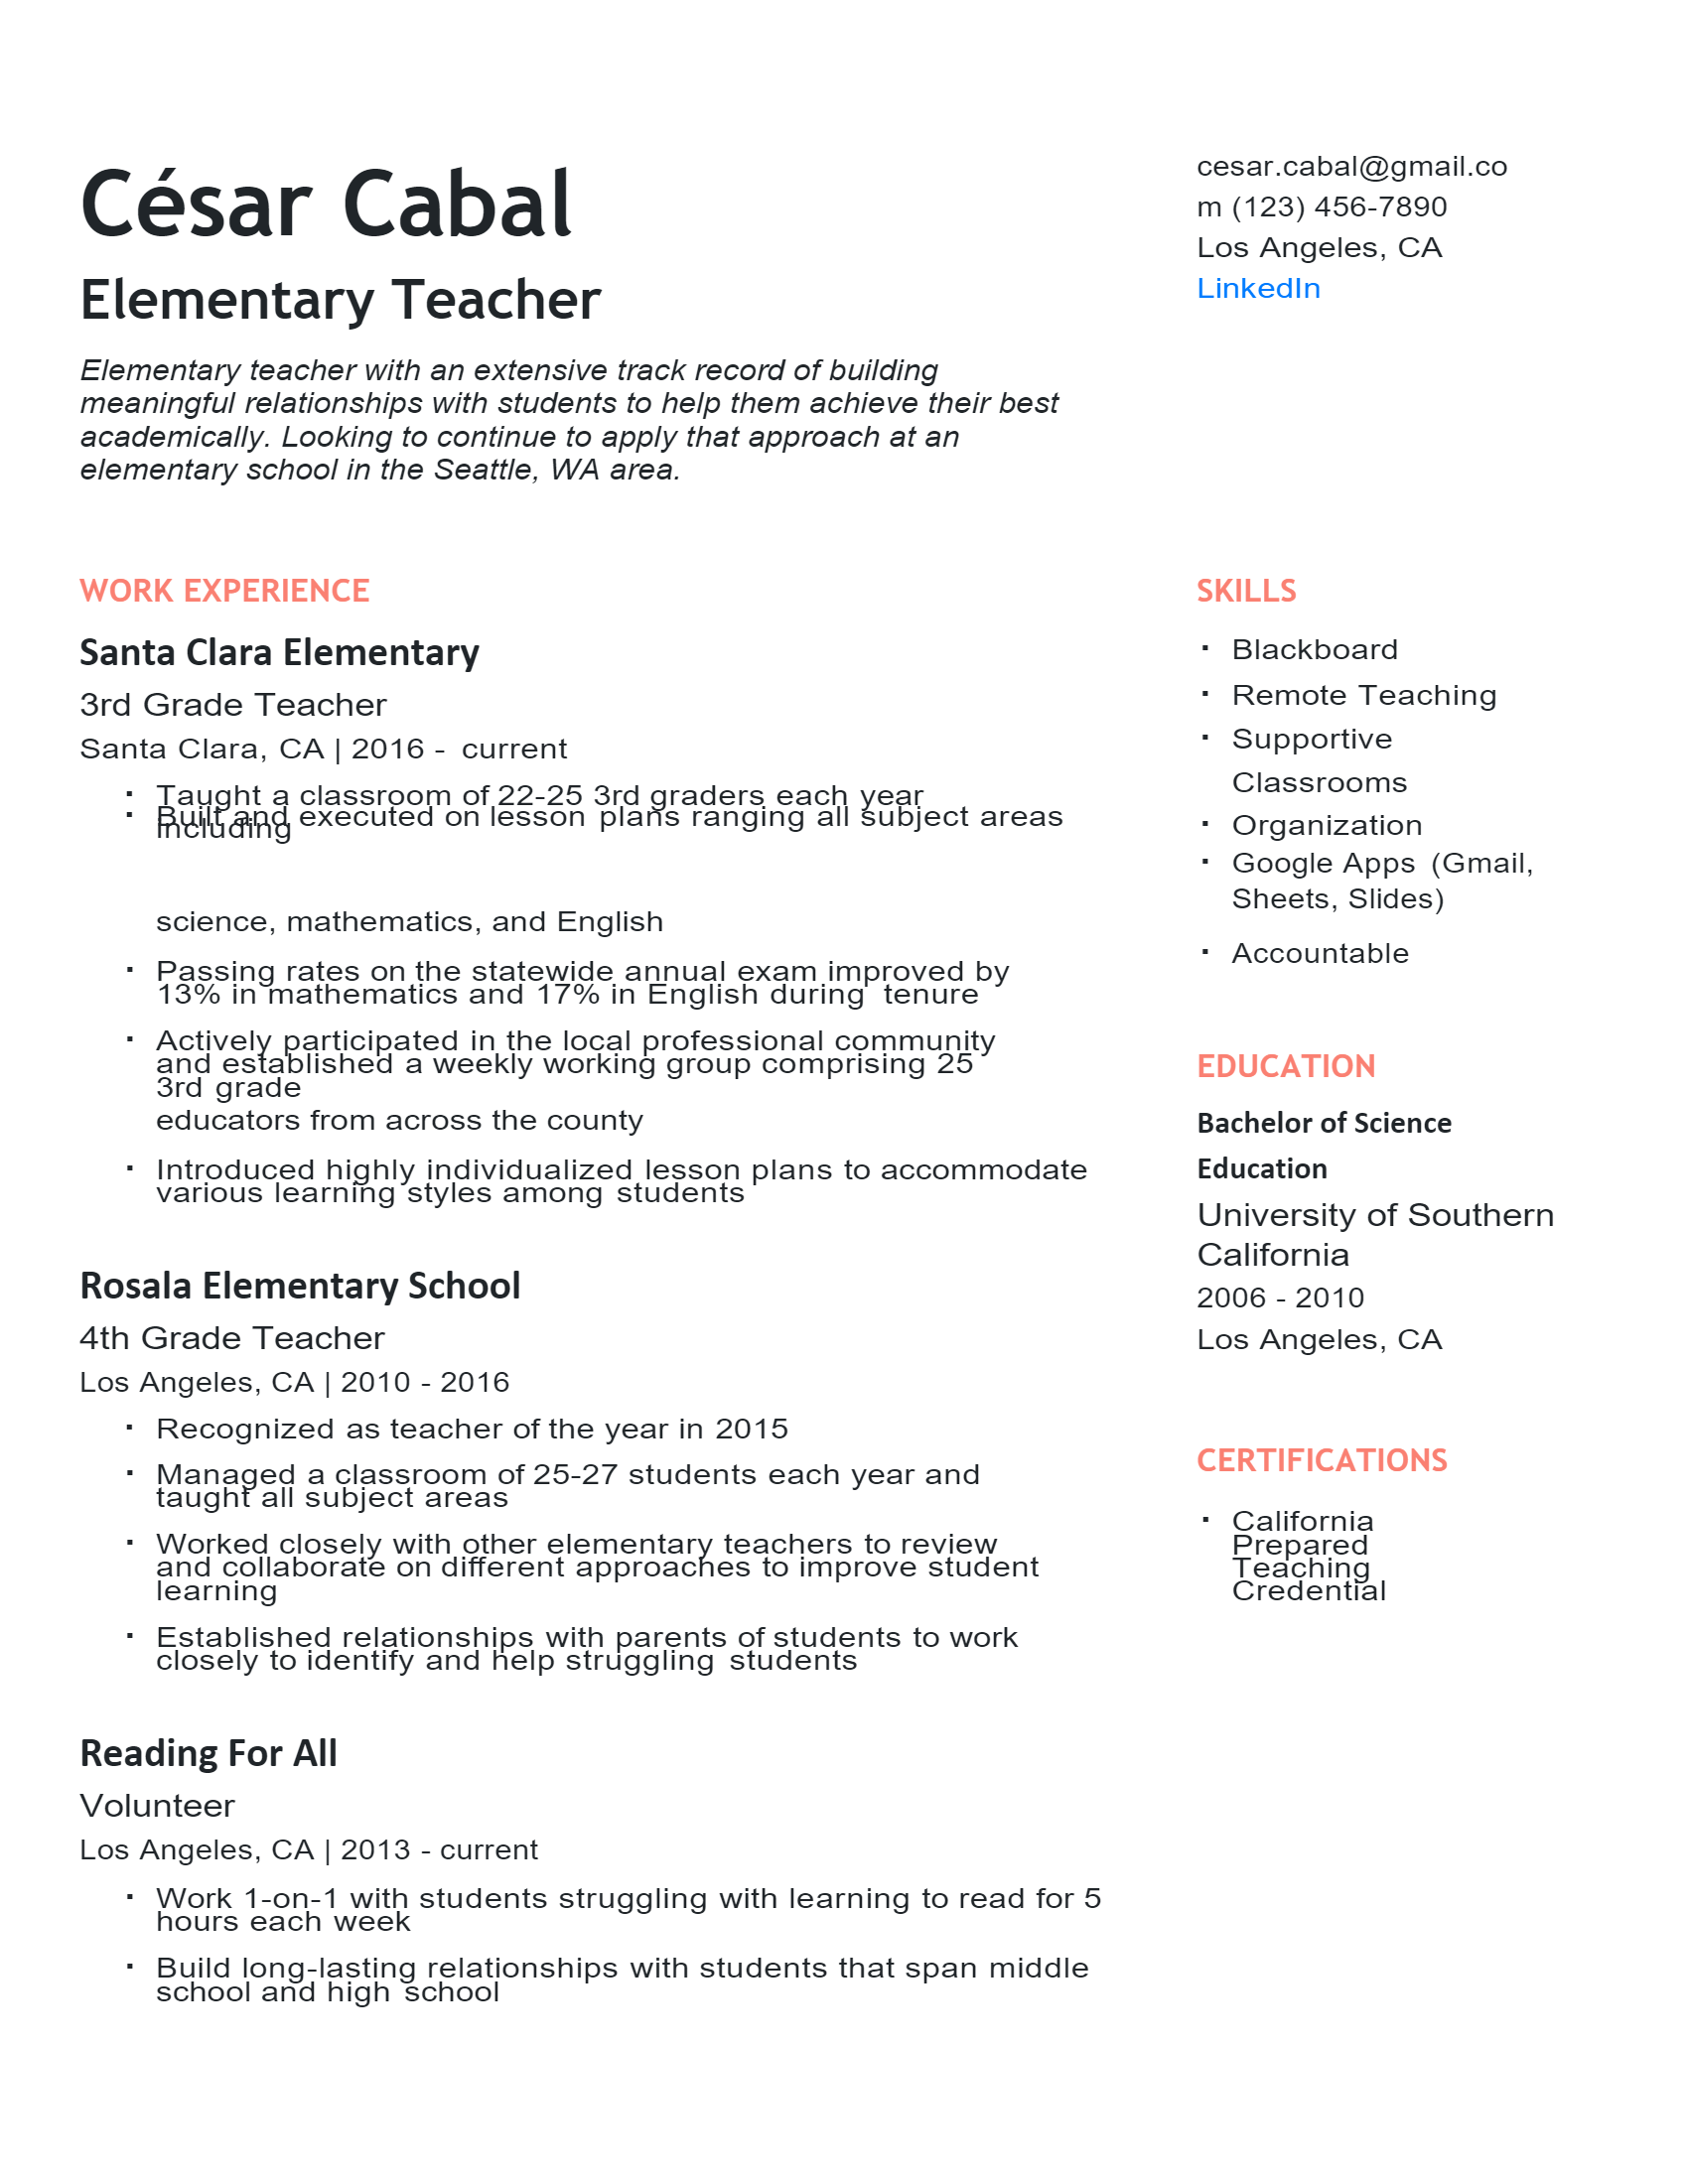 Elementary Teacher Resume .Docx (Word)